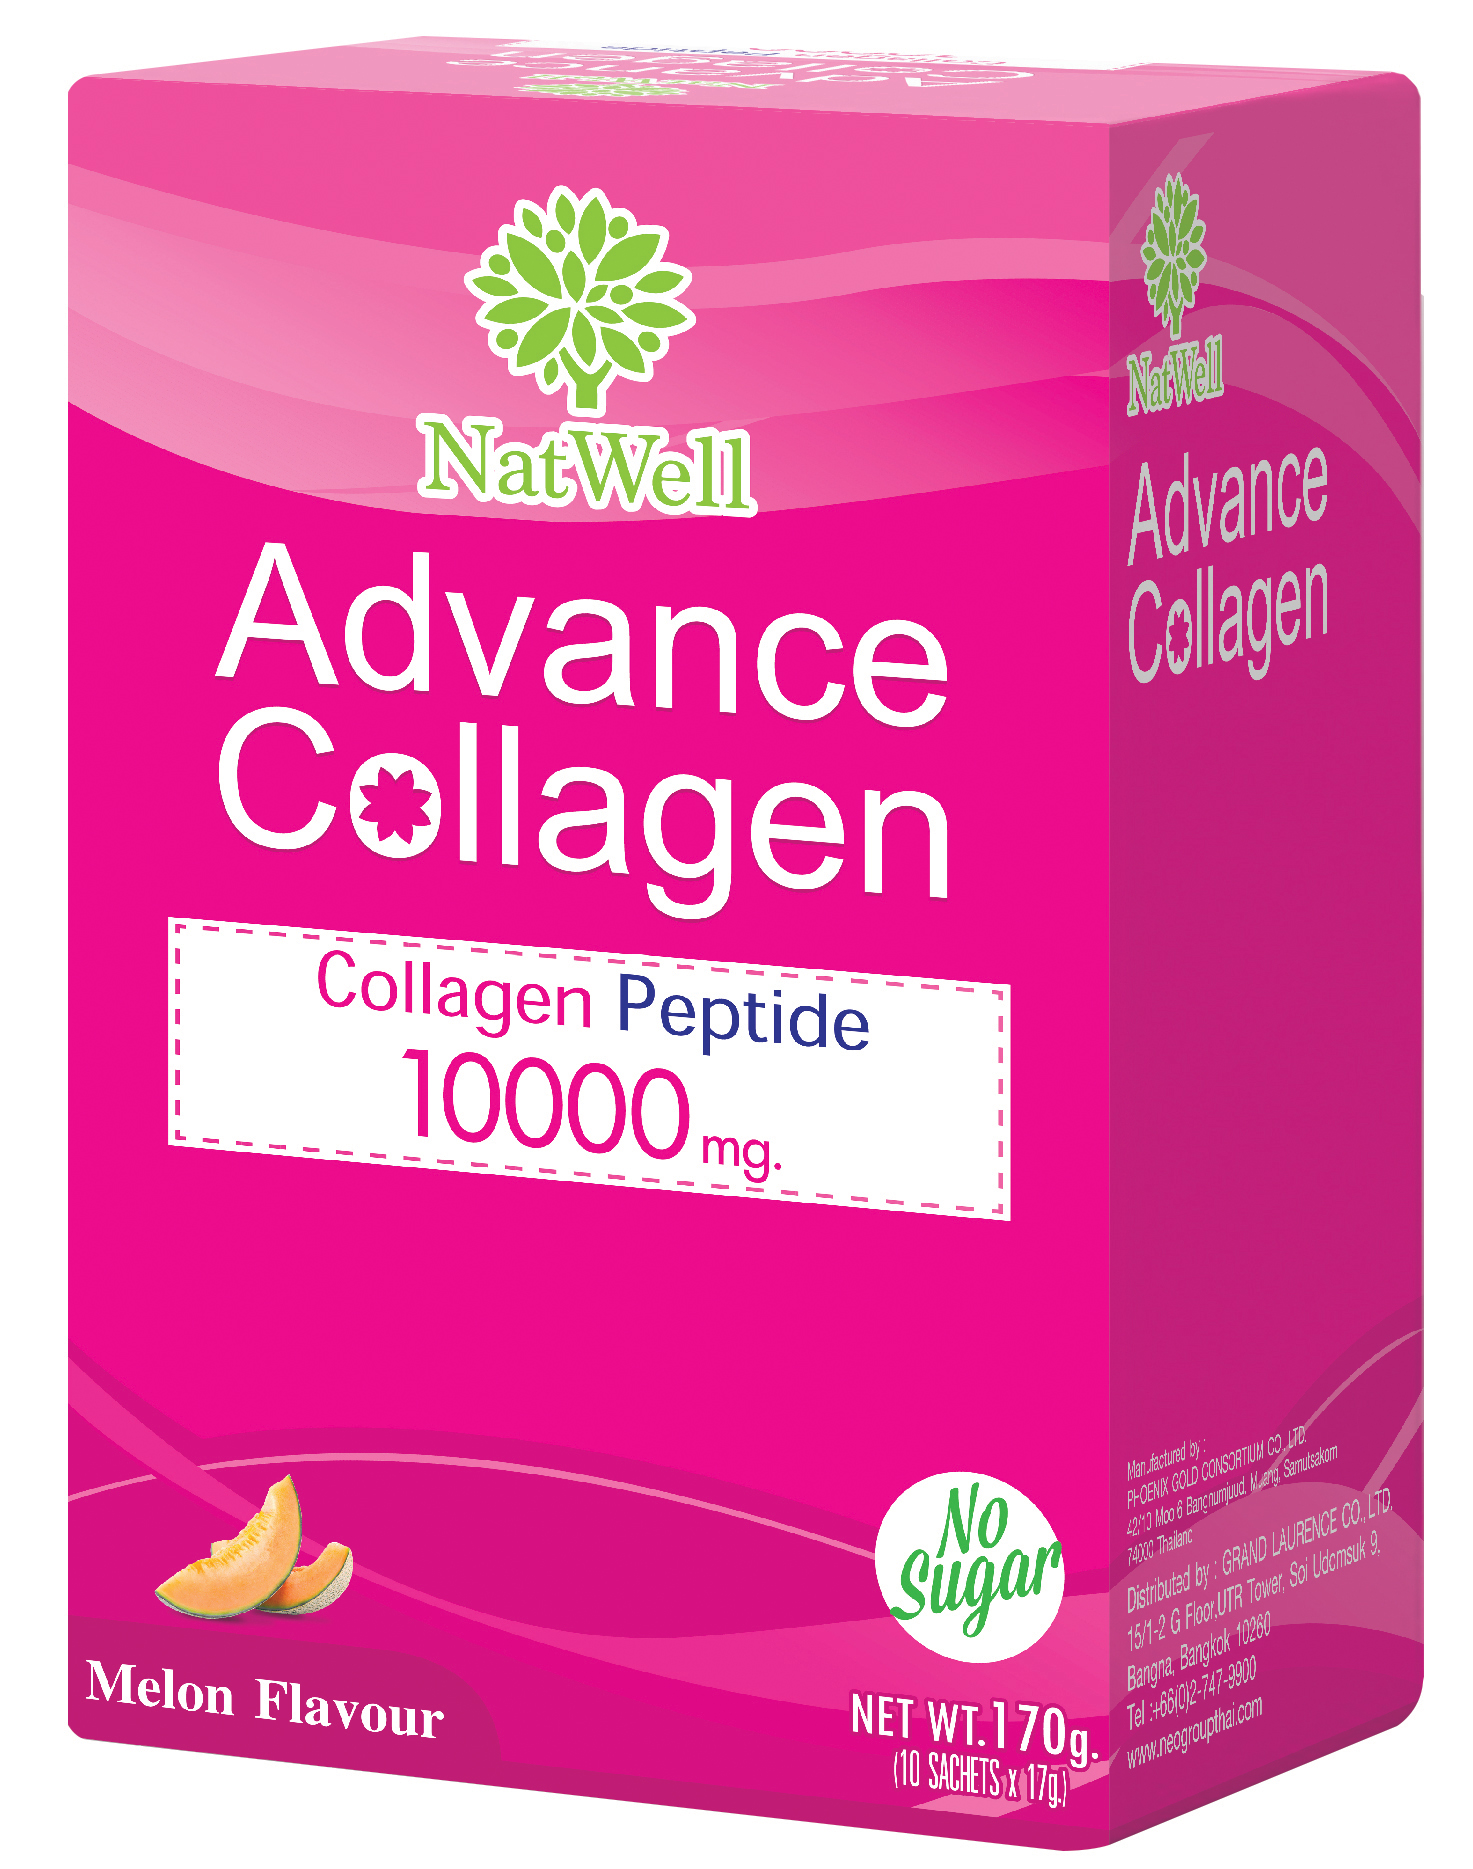 NatWell Advance Collagen แนทเวลล์ แอดวานซ์ คอลลาเจน 10 ซอง